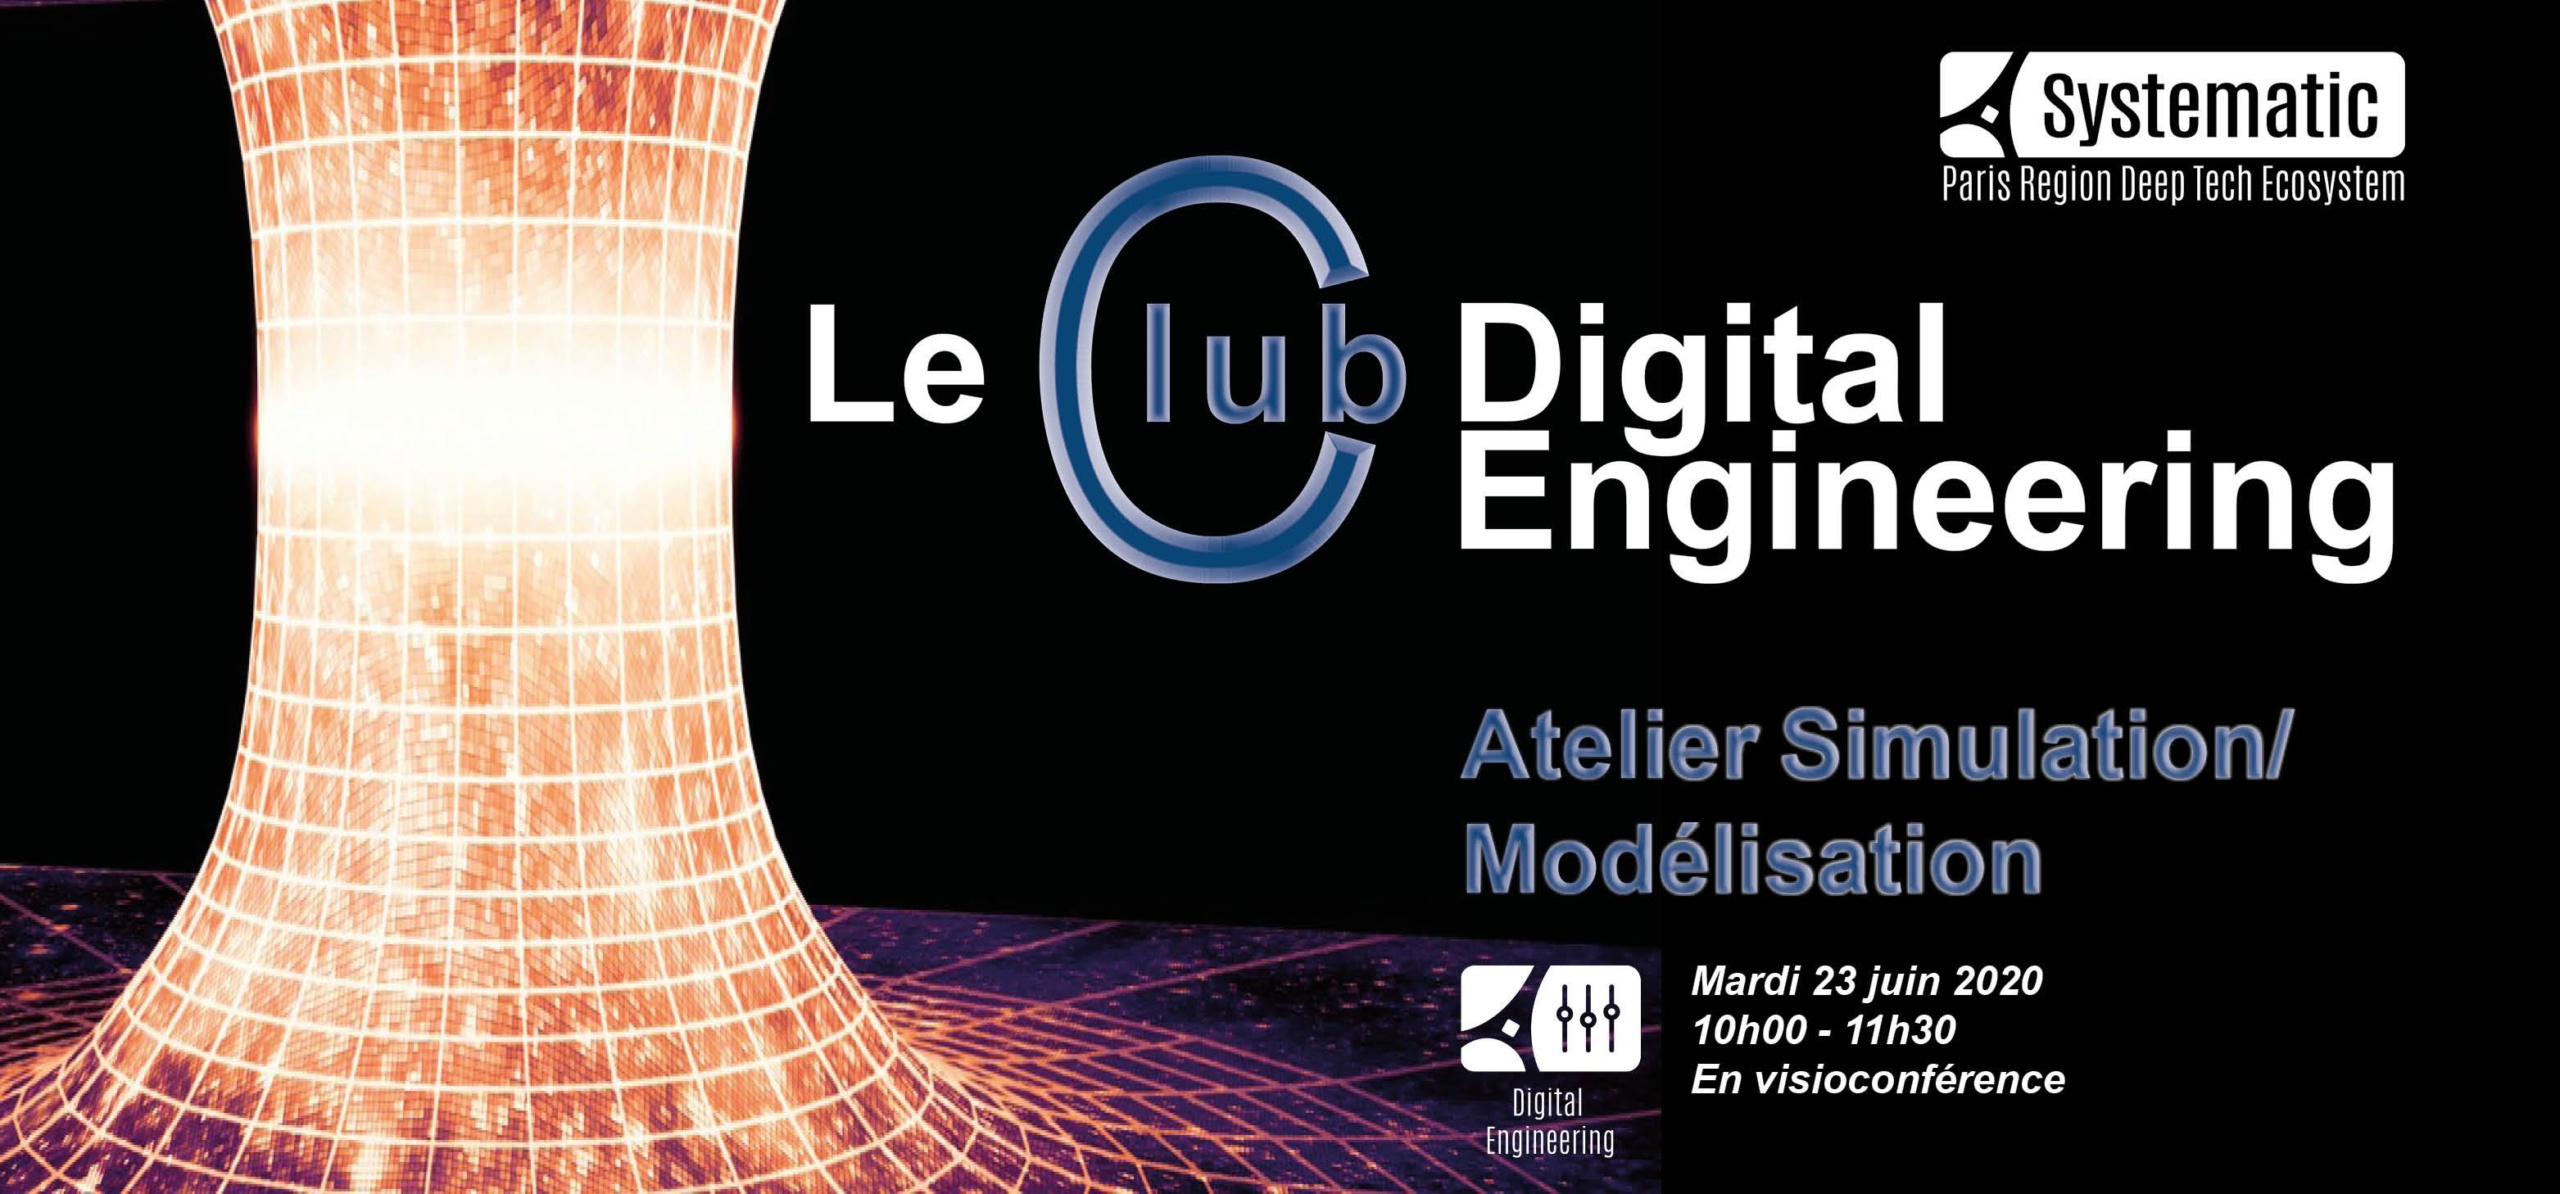 Le Club Digital Engineering “Simulation/Modélisation”